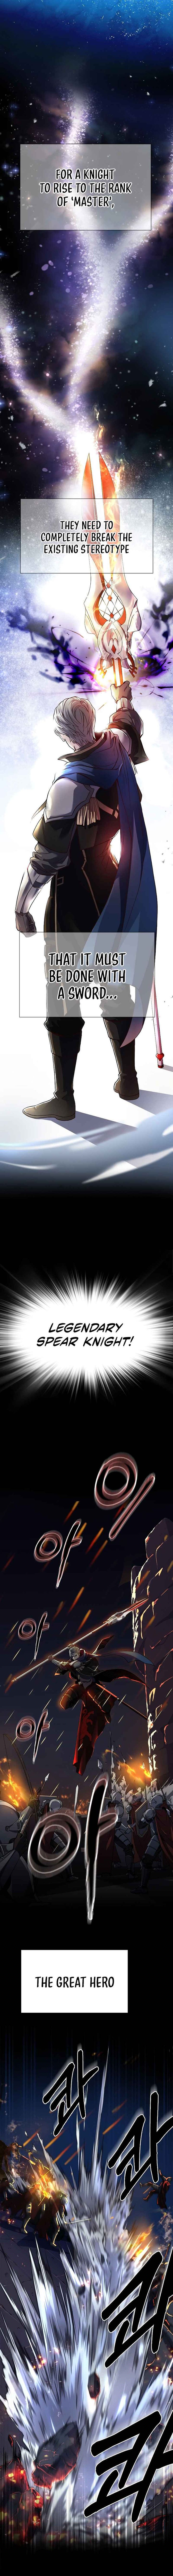 Return Of The Legendary Spear Knight 1 1